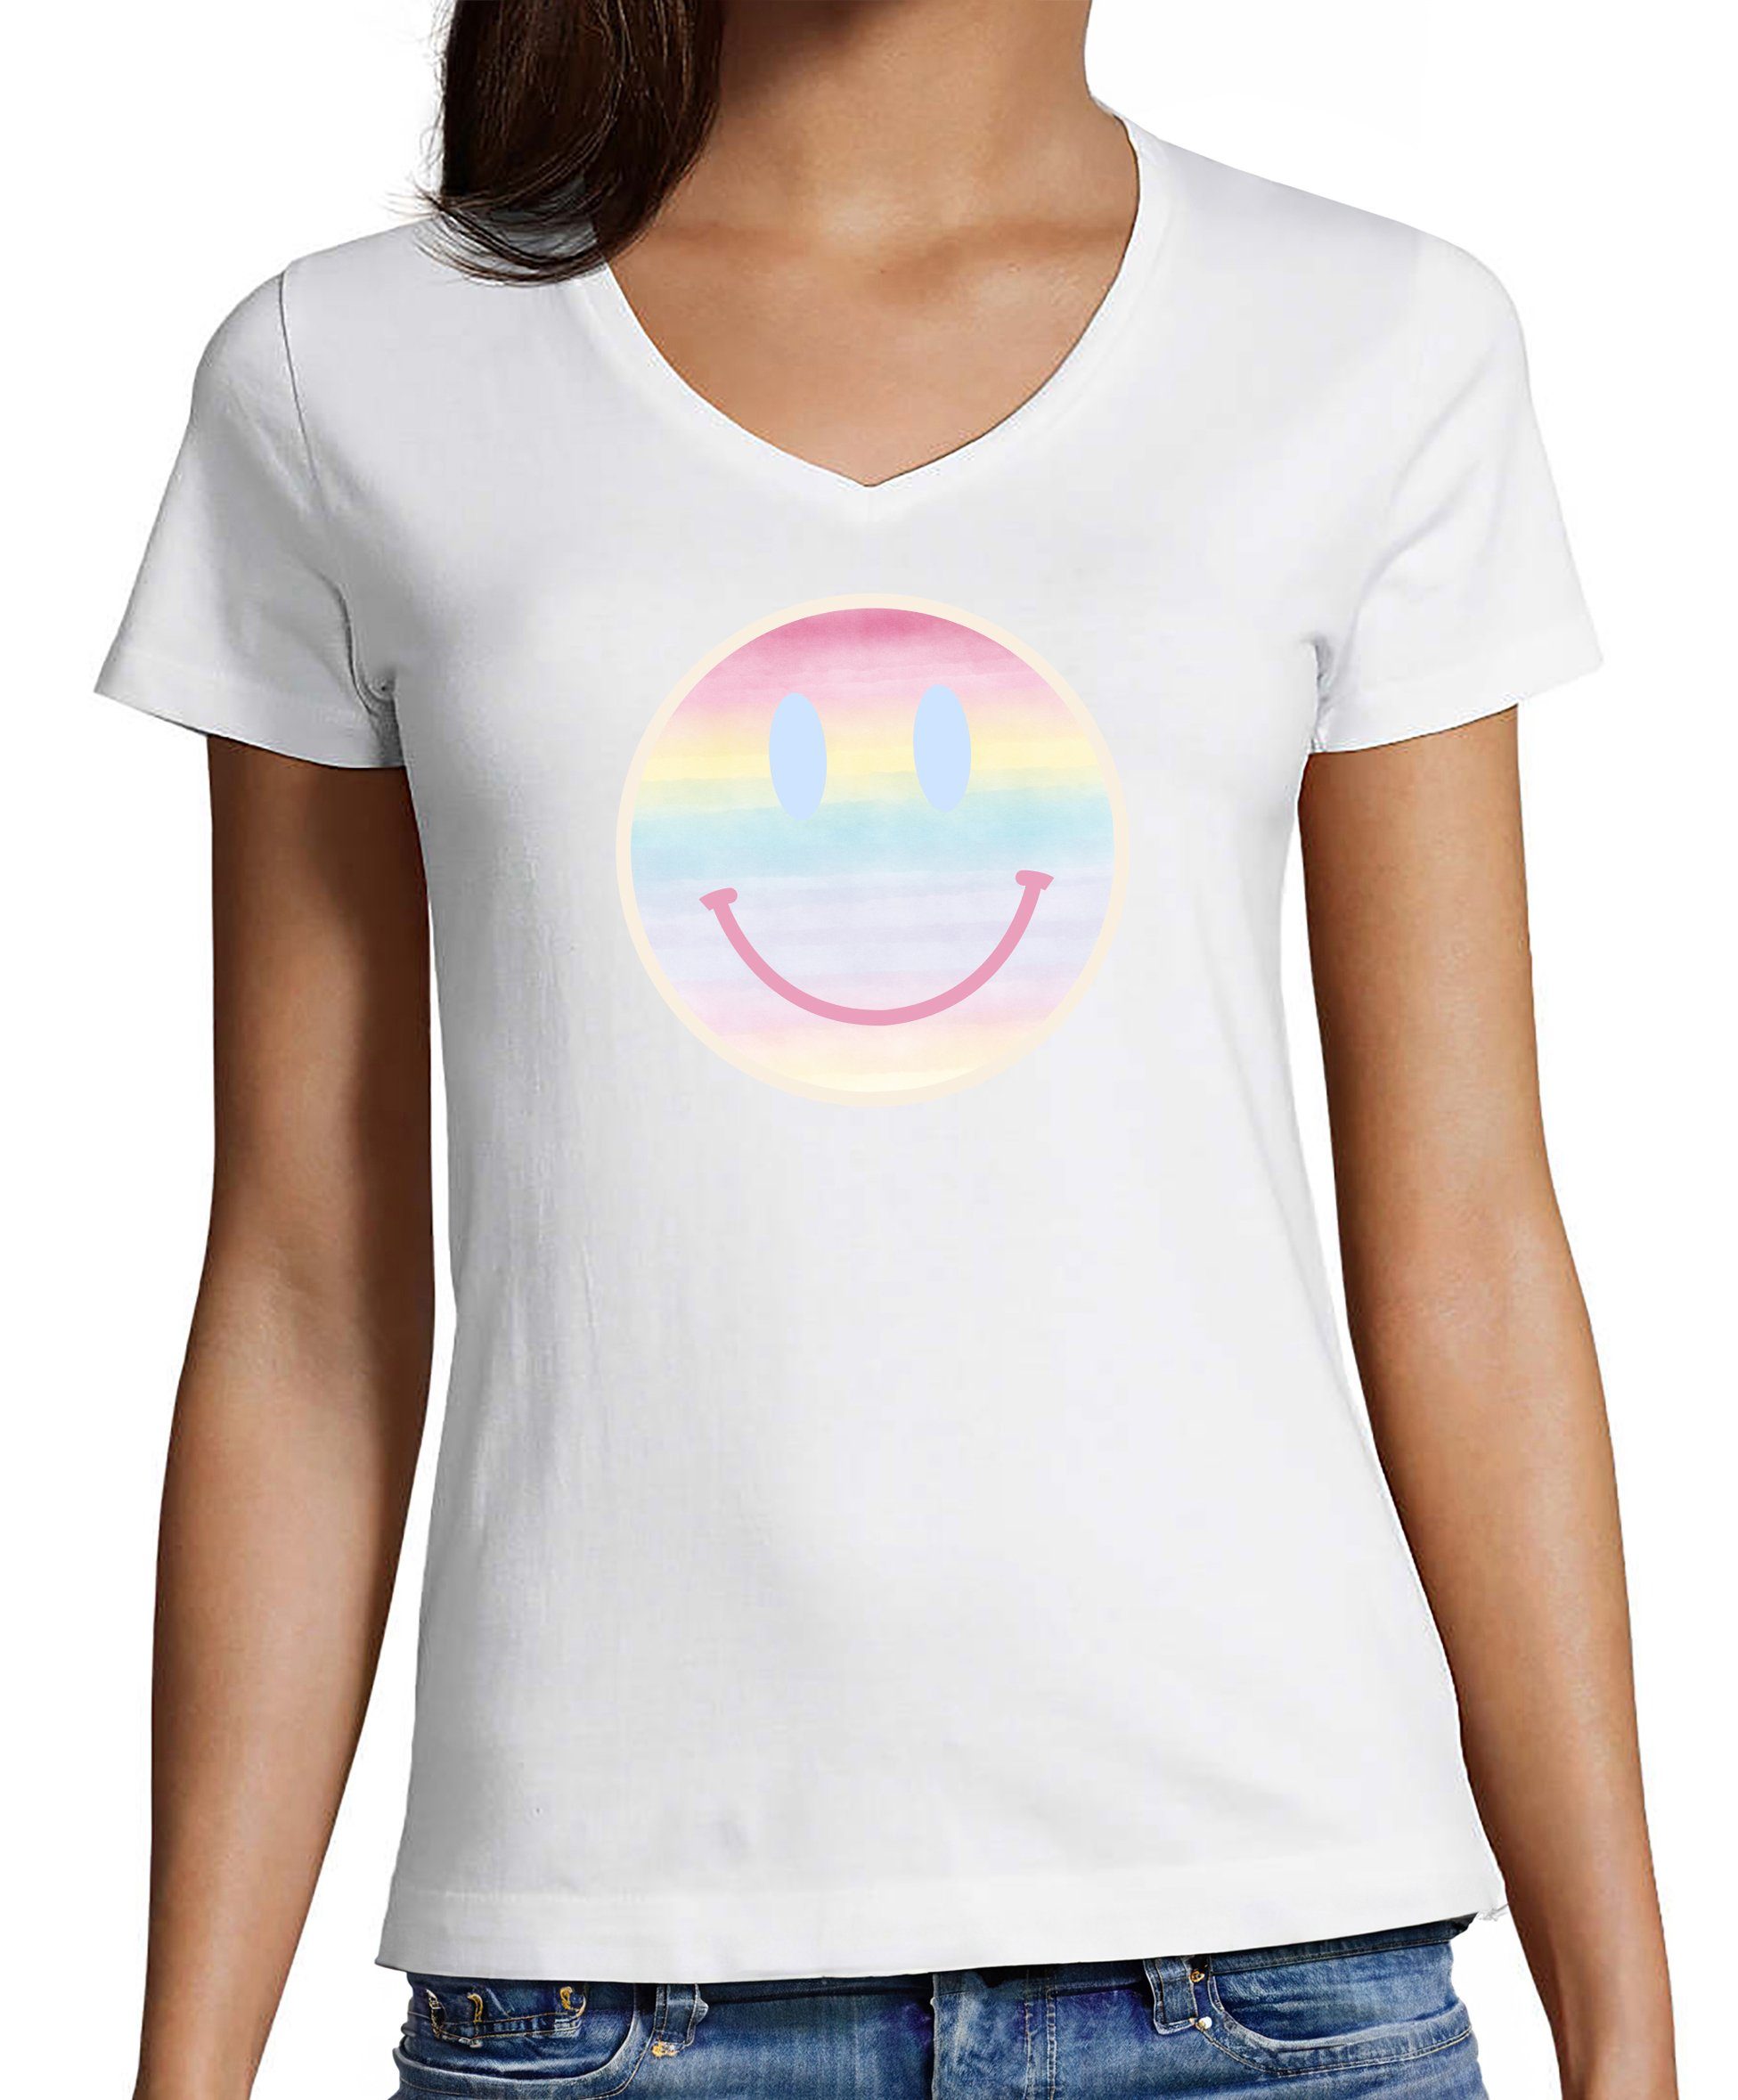 MyDesign24 T-Shirt Damen Smiley Print Shirt - Lächelnder pastellfarbener Smiley V-Ausschnitt Baumwollshirt mit Aufdruck Slim Fit, i297 weiss